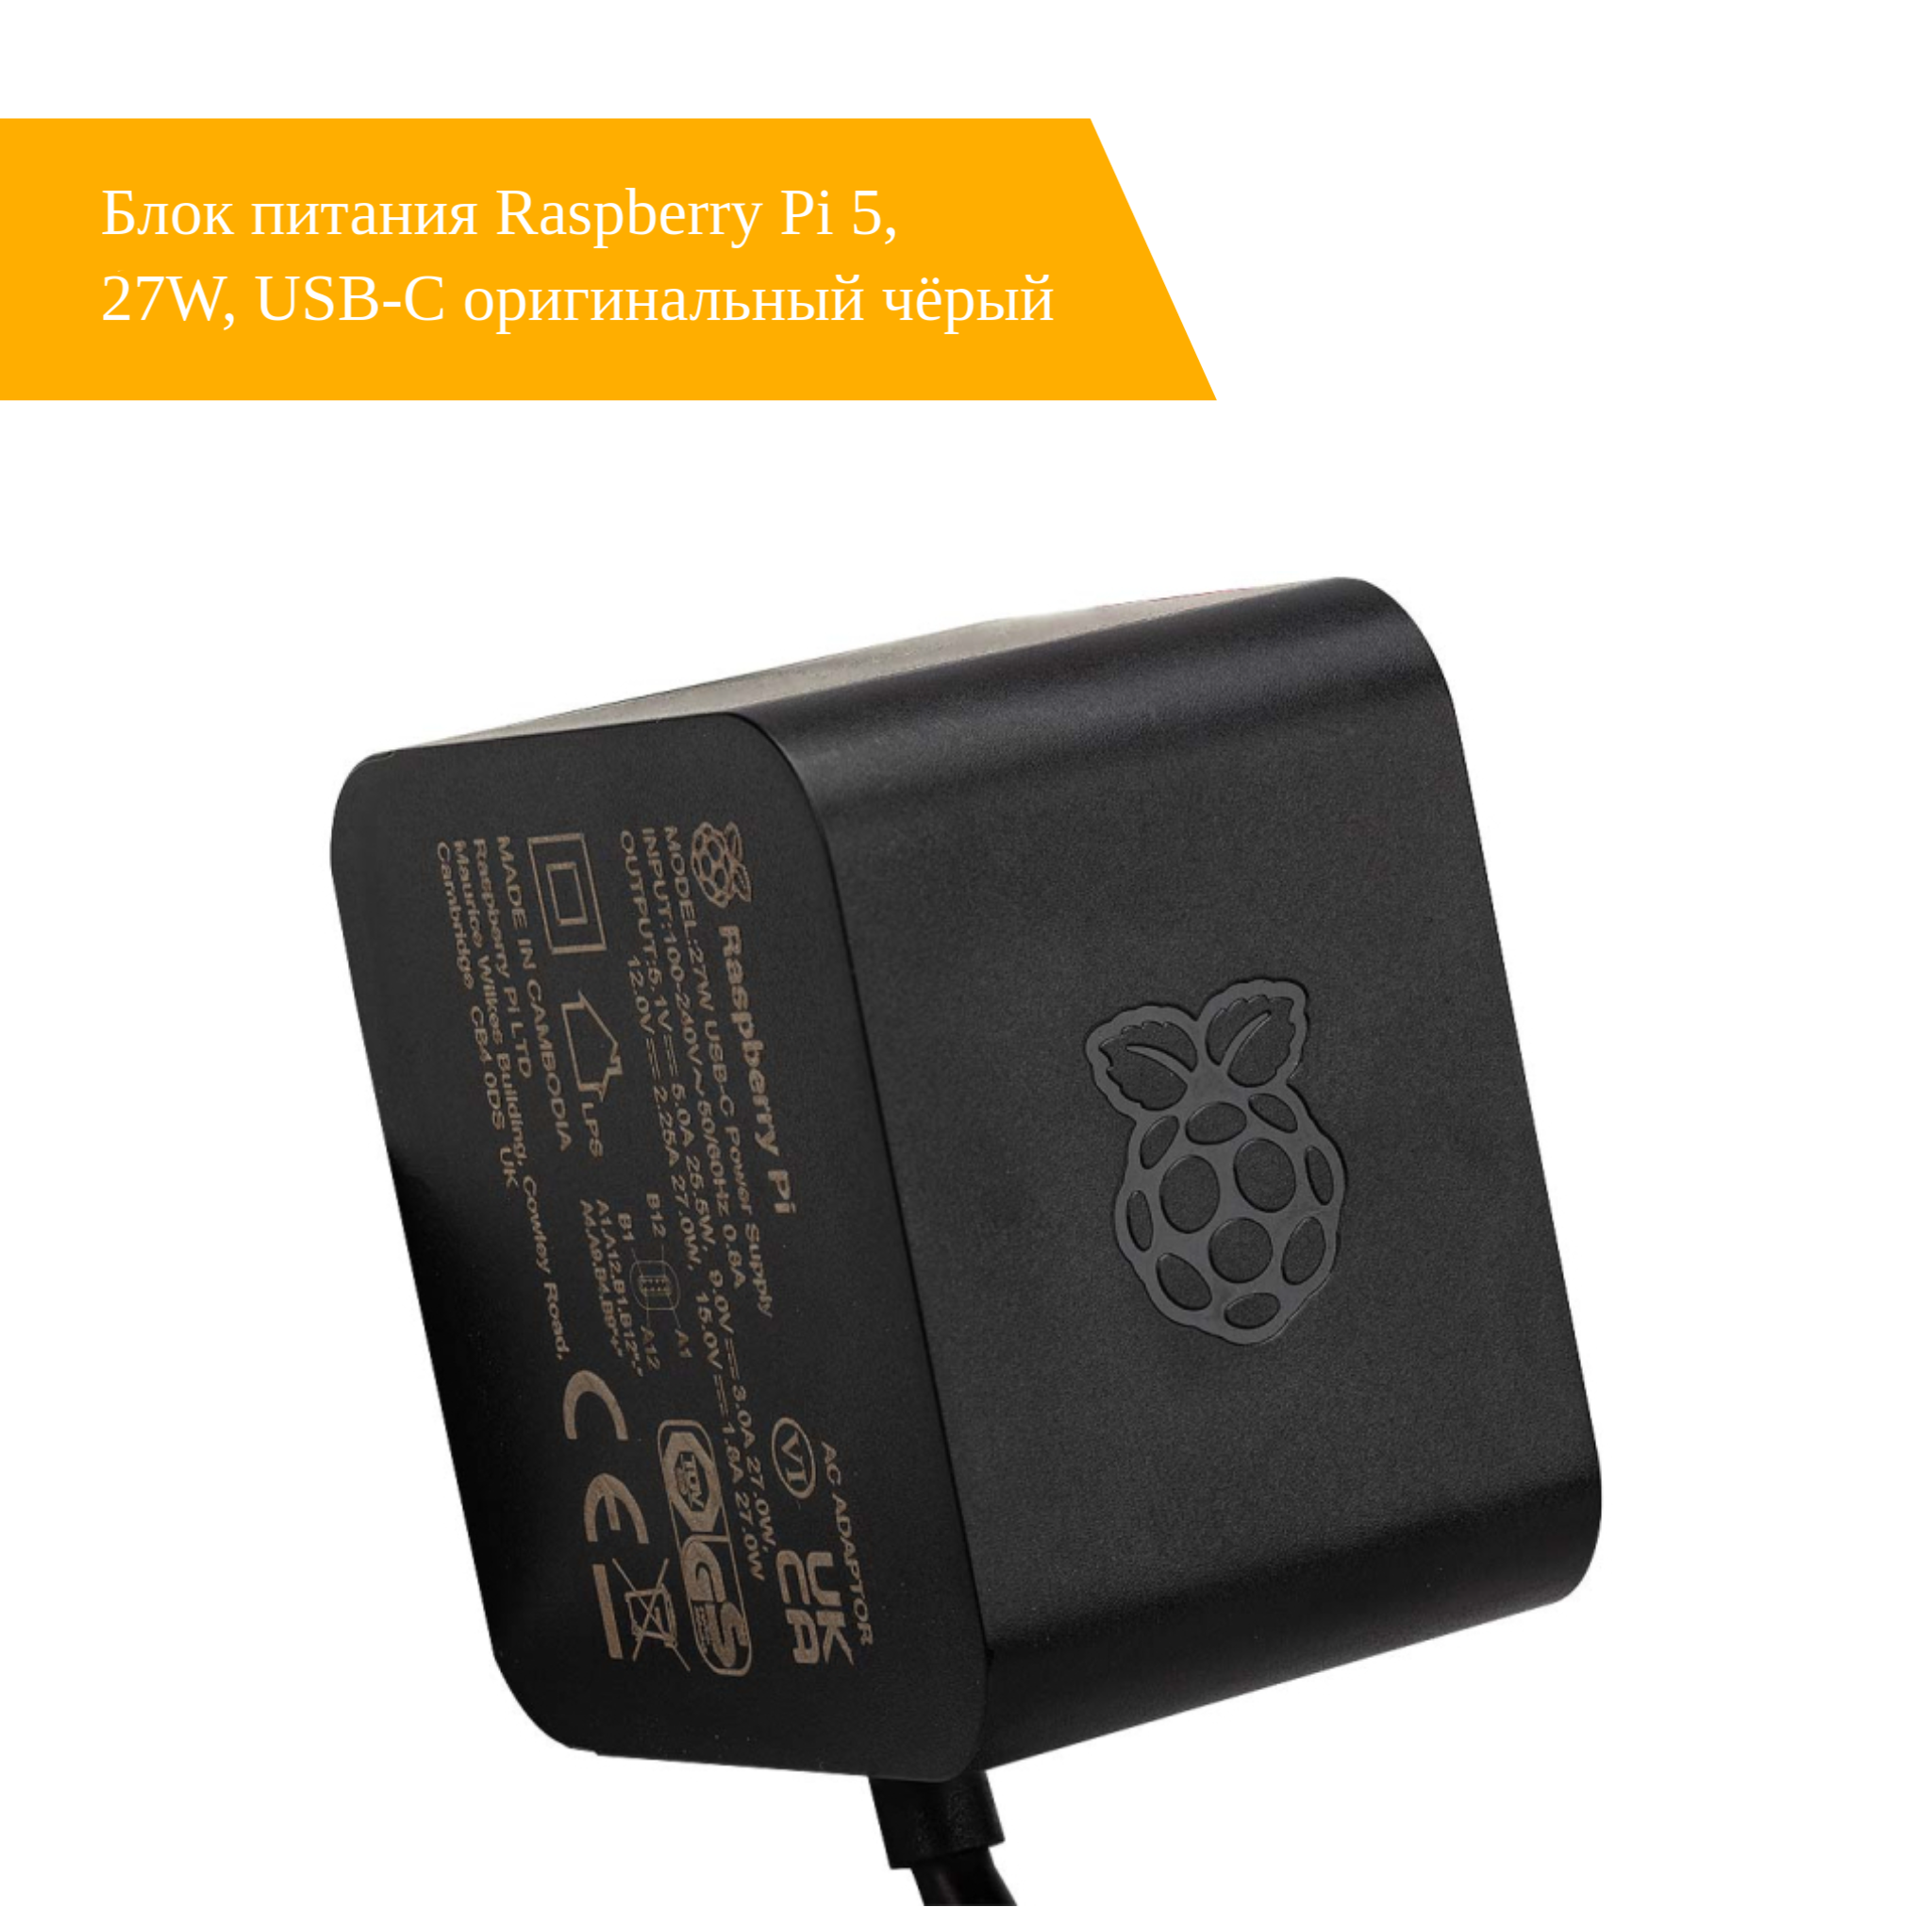 Блок питания Raspberry Pi 5, 27W, USB-C оригинальный чёрный